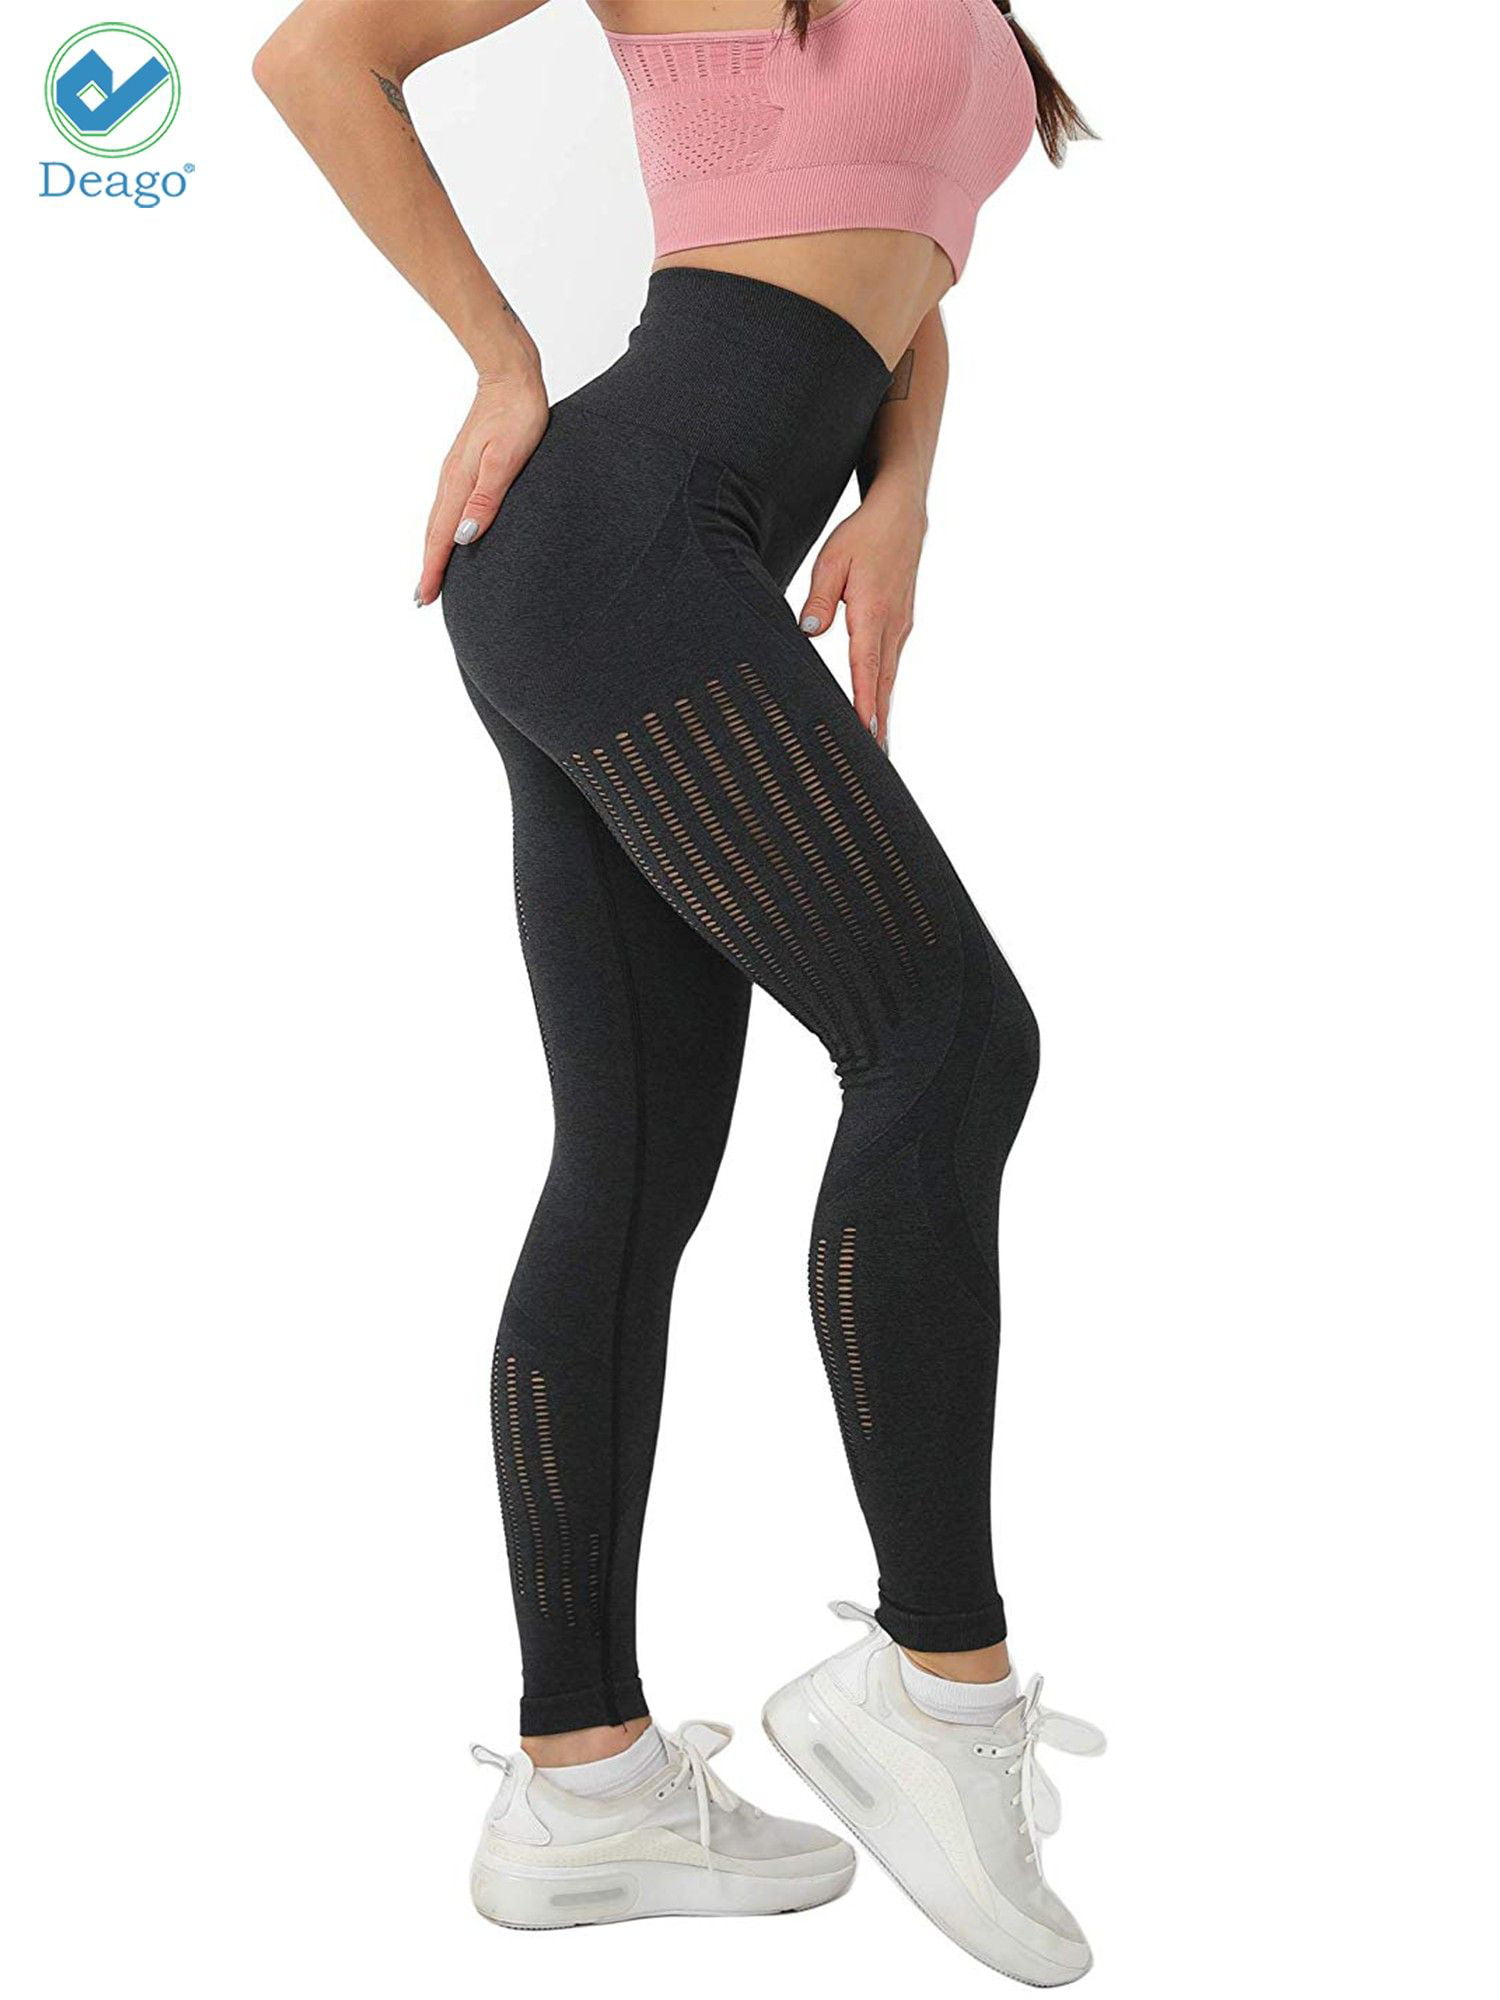 yoga pants seamless stretchy gym wear sport women running tummy control